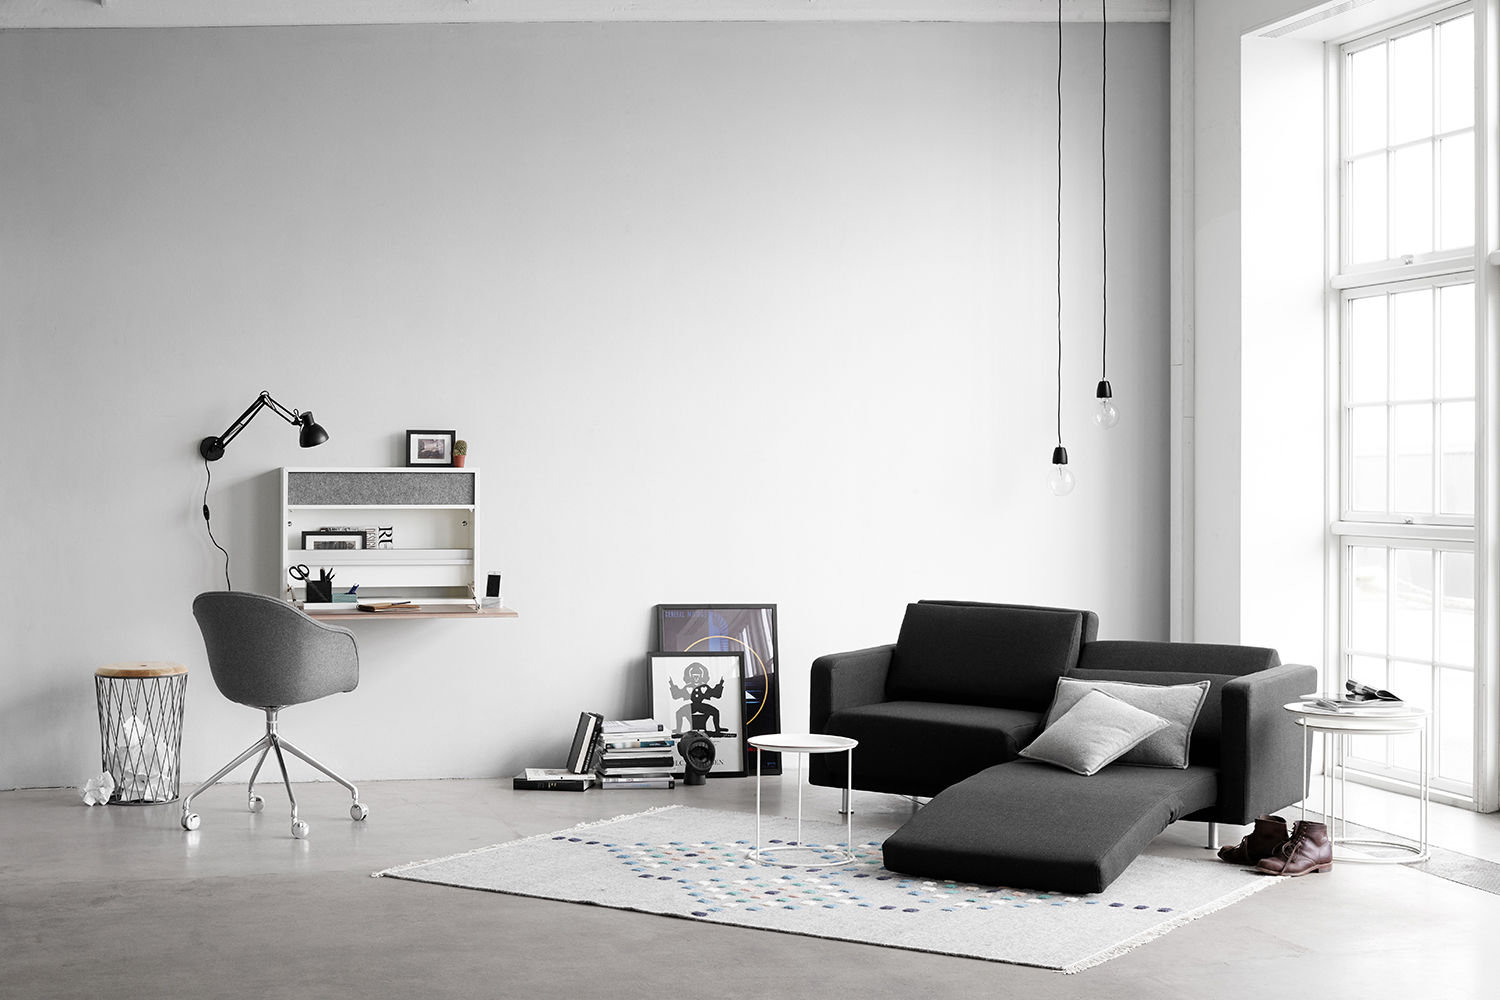 スペースをつくる機能家具, 株式会社ボーコンセプト・ジャパン 株式会社ボーコンセプト・ジャパン Scandinavian style living room Sofas & armchairs